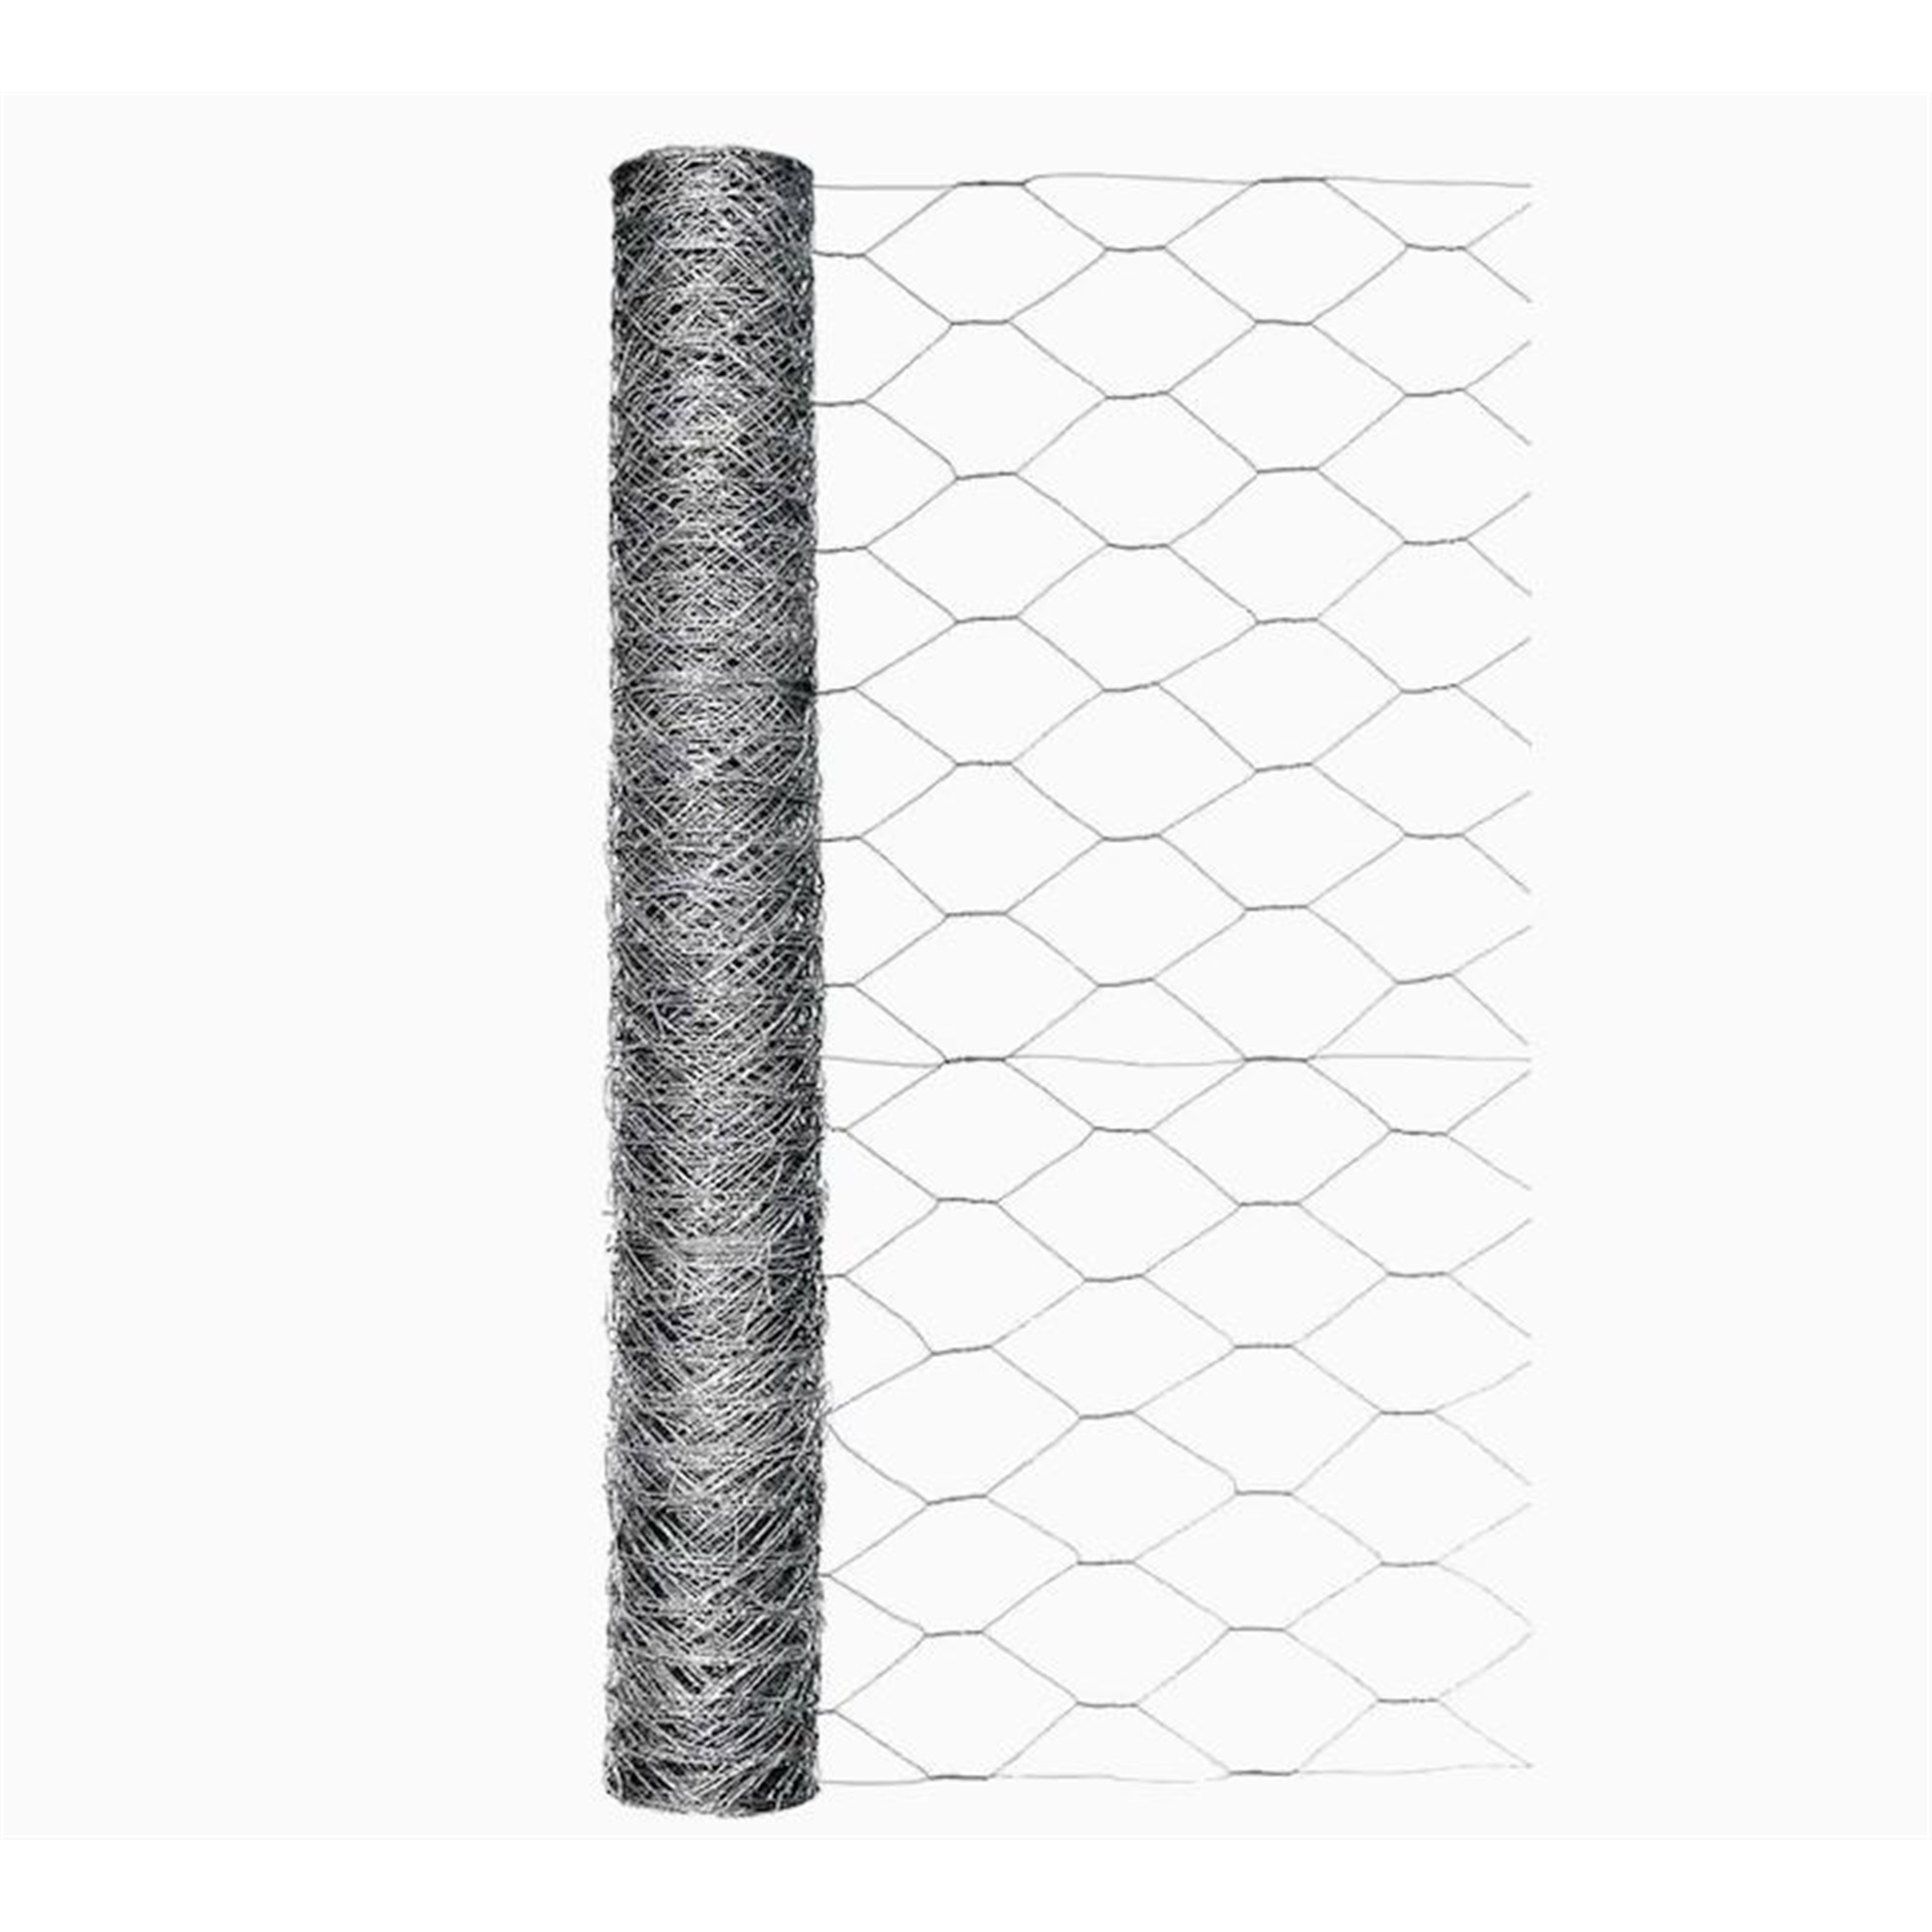 24''x50' Galvanised Chicken Wire Rabbit Mesh Fence Barrier Garden Netting Cage